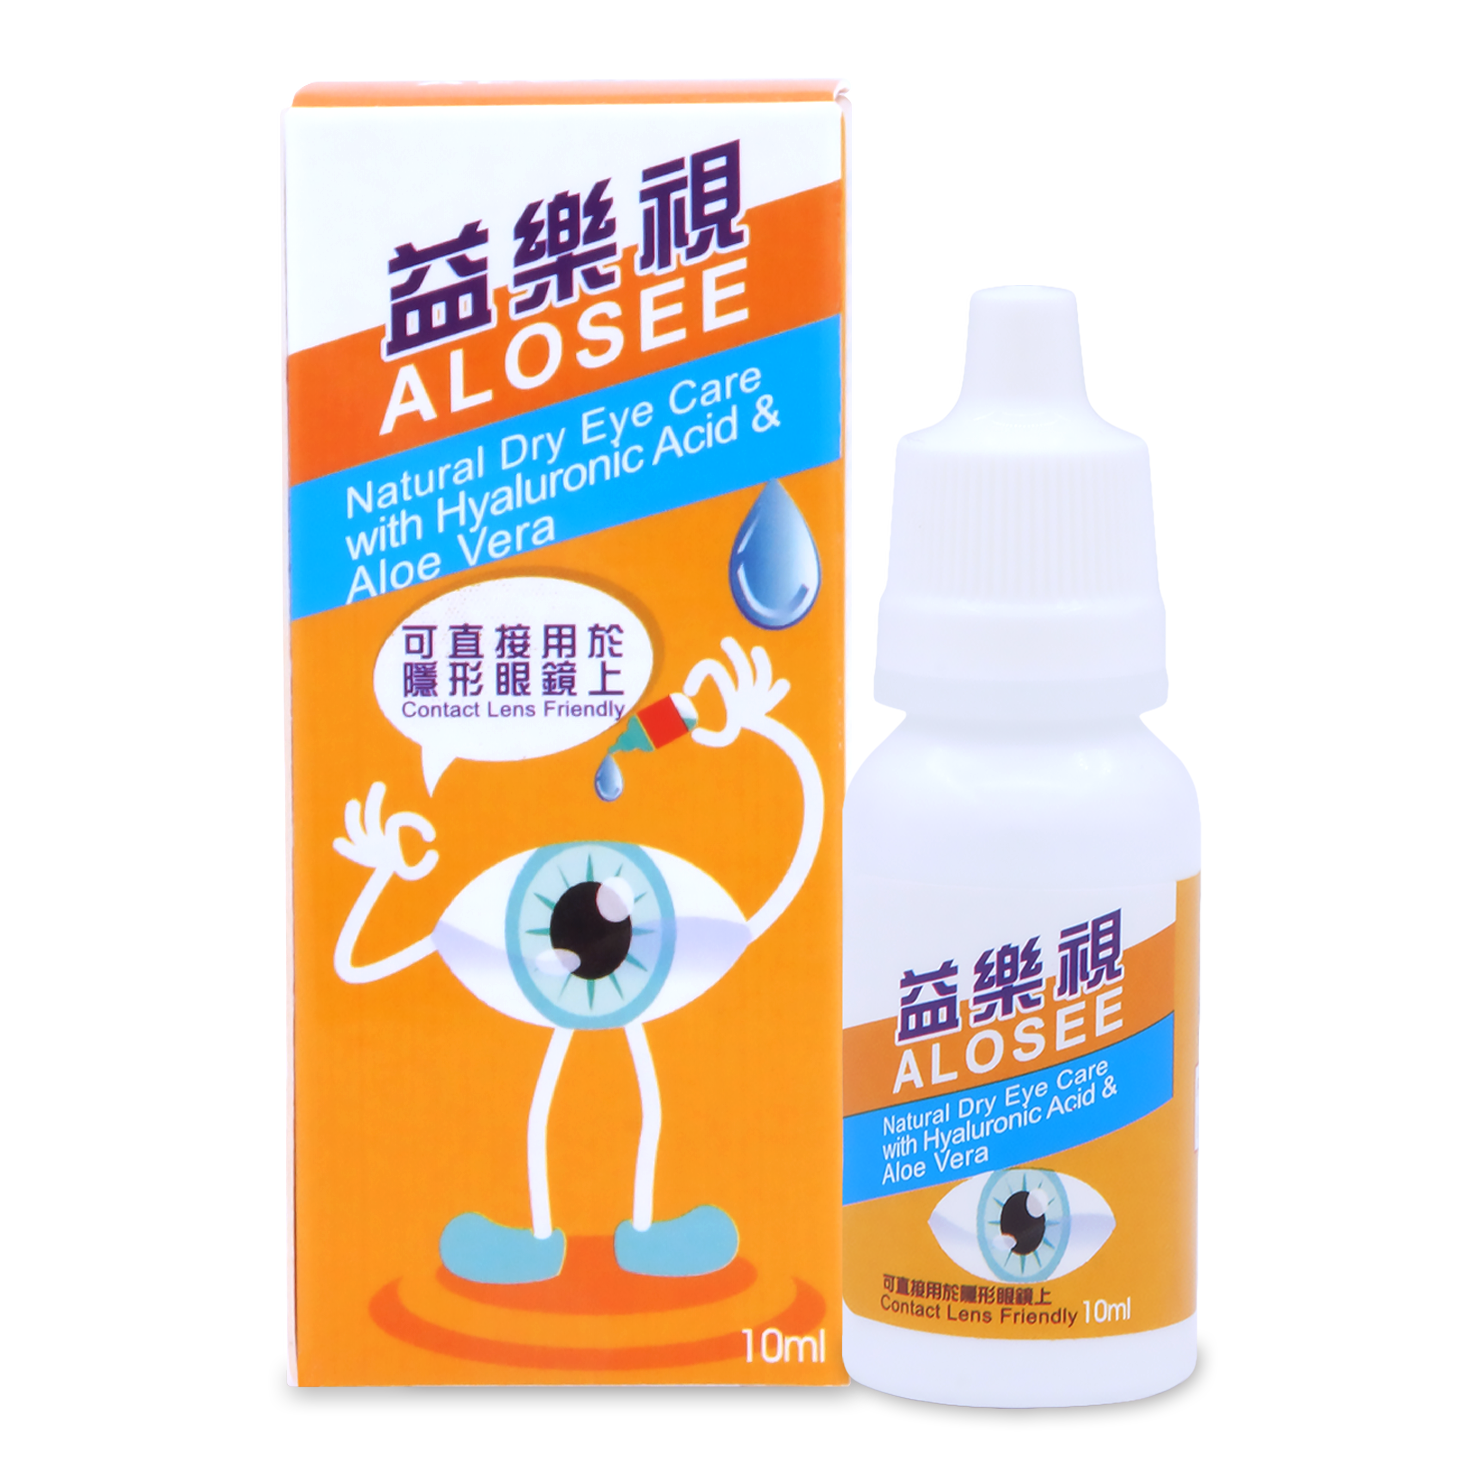 益樂視10ml Alosee Natural Dry Eye Relief with Hyaluronic Acid & Aloe Vera 10ml